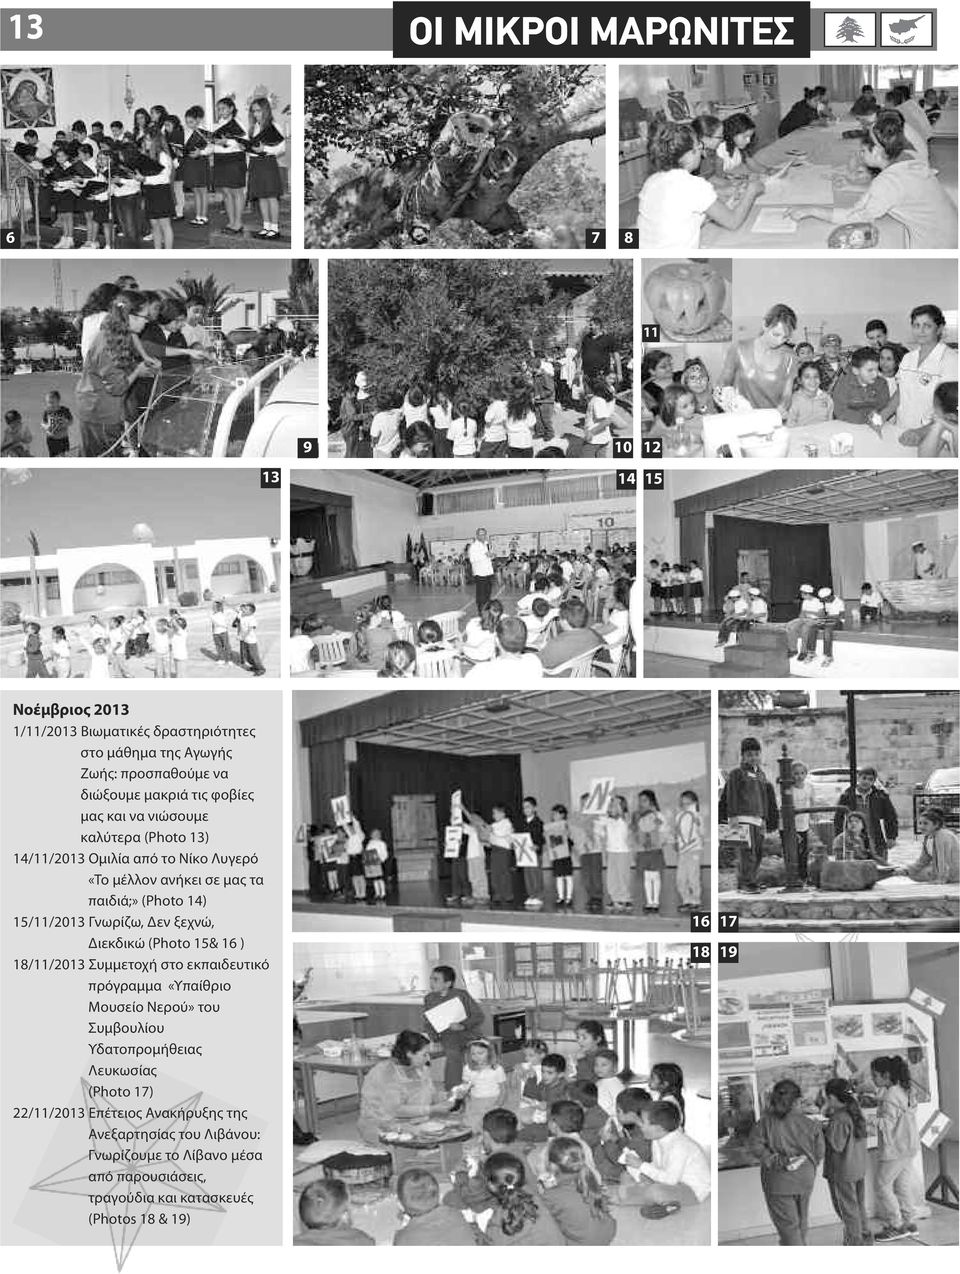 Δεν ξεχνώ, Διεκδικώ (Photo 15& 16 ) 18/11/2013 Συμμετοχή στο εκπαιδευτικό πρόγραμμα «Υπαίθριο Μουσείο Νερού» του Συμβουλίου Υδατοπρομήθειας Λευκωσίας (Photo